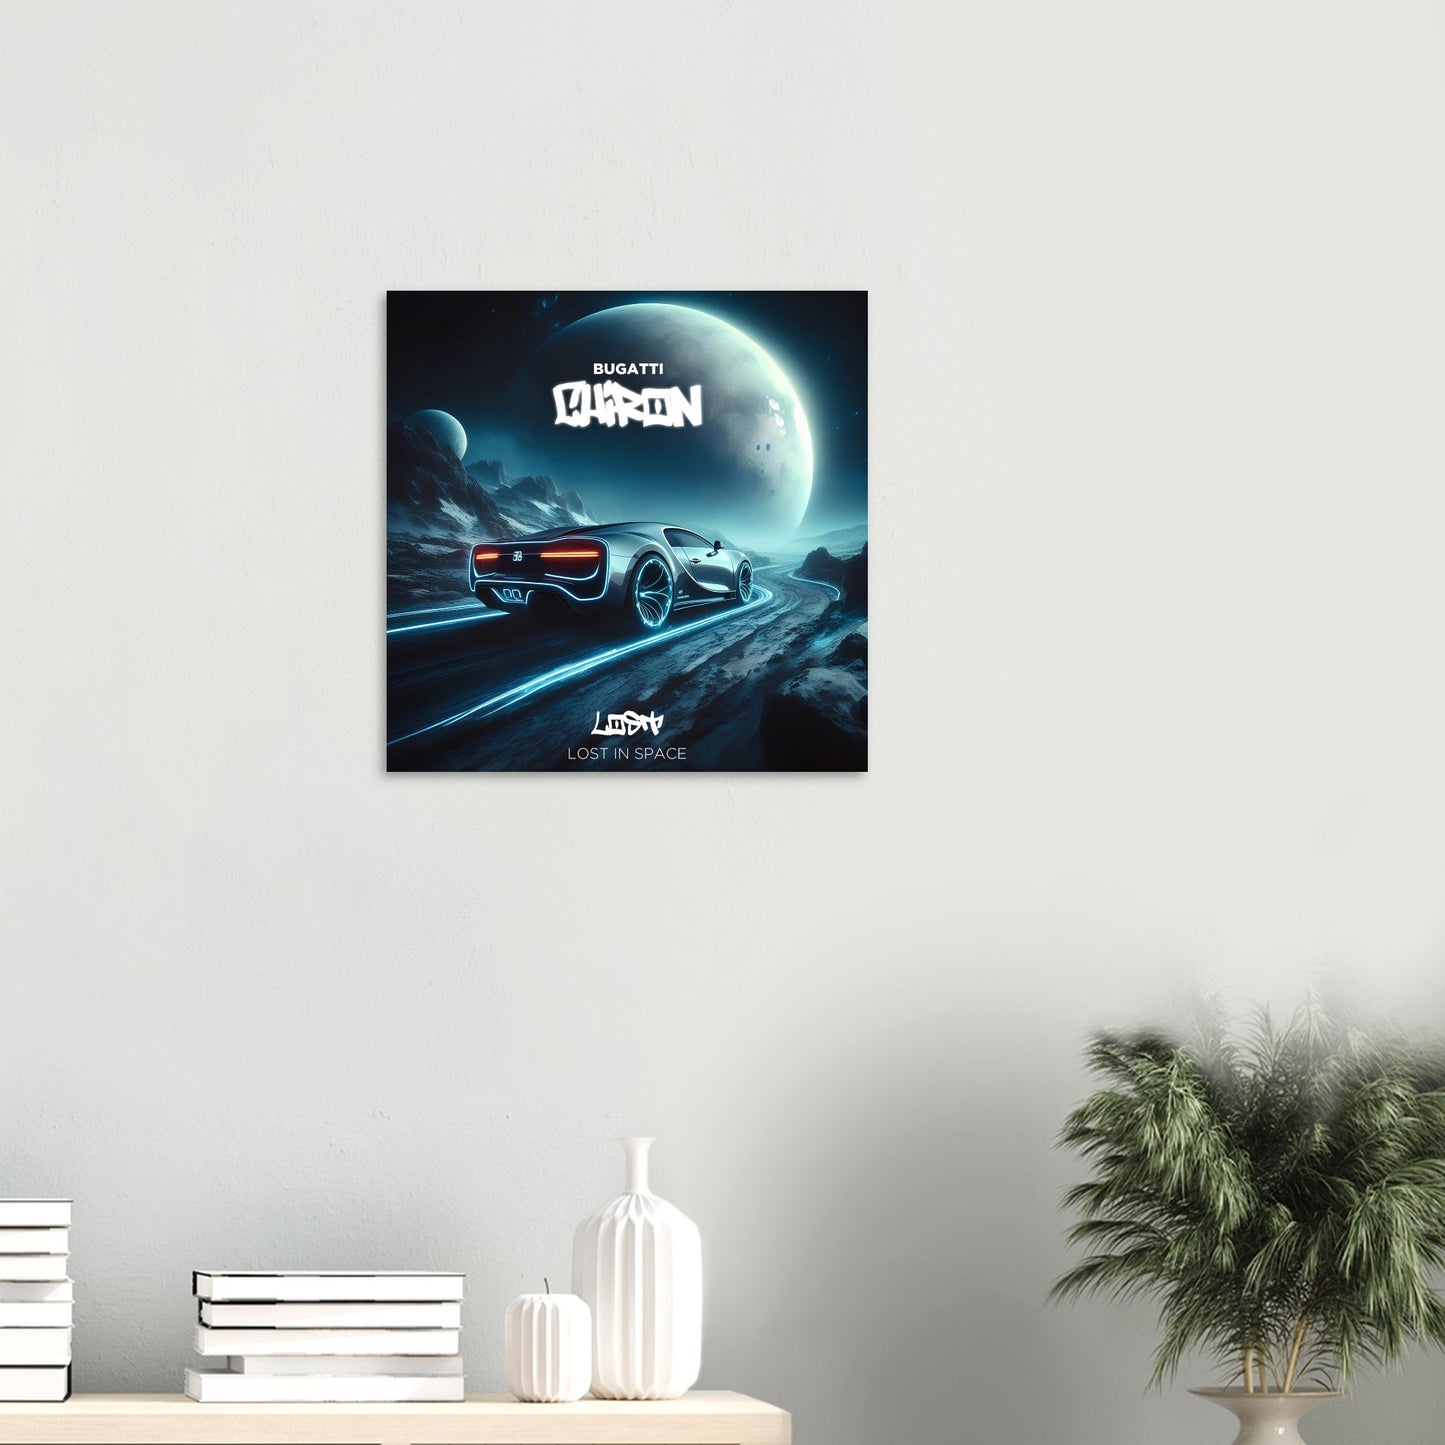 Bugatti Chiron - LOST IN SPACE Poster